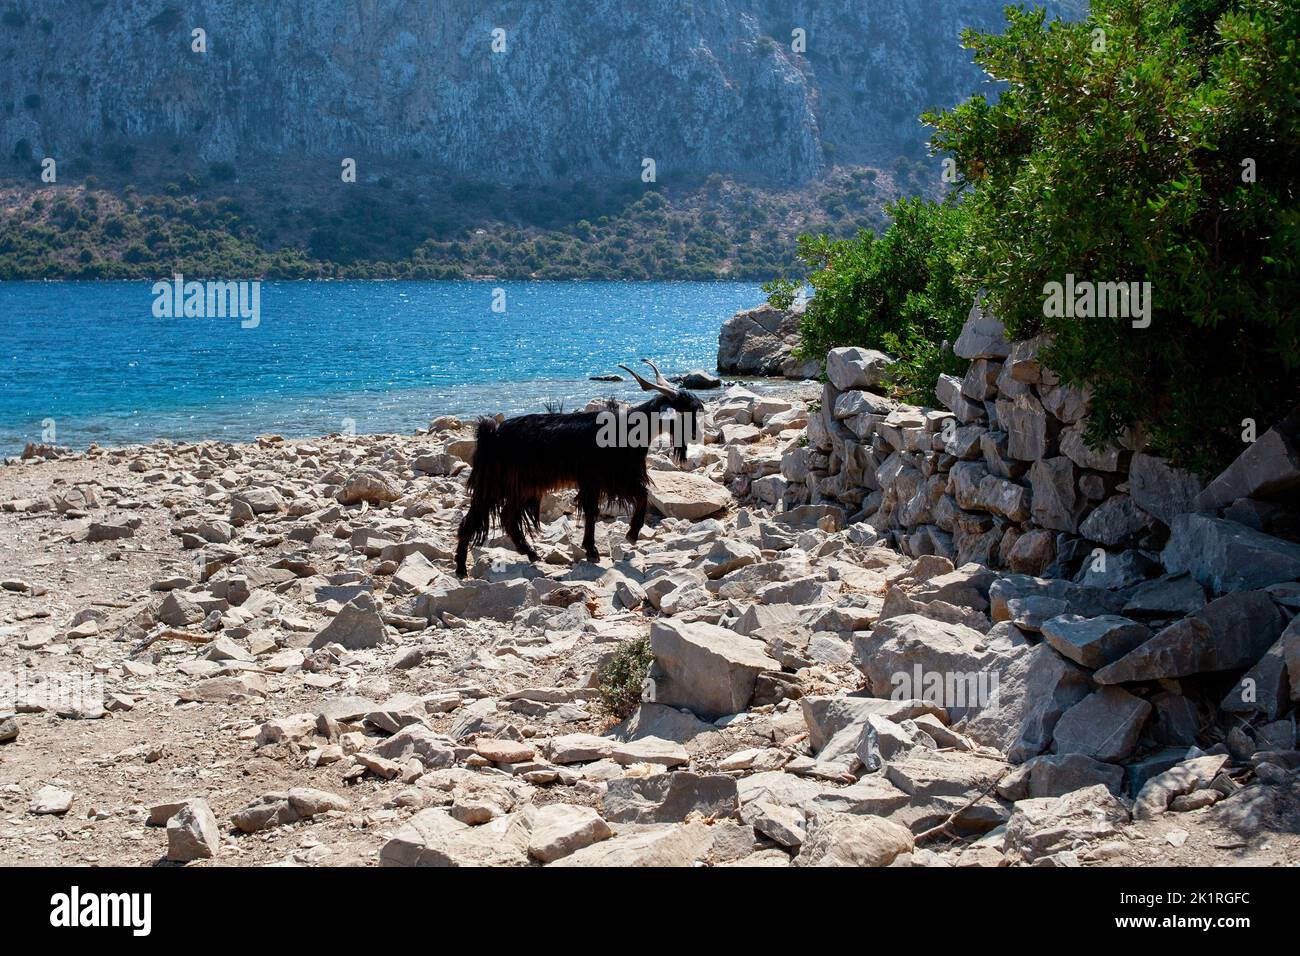 Neugierige Ziegen. Wilde Ziege am Strand. Ziegen typisch für den Mittelmeerraum mit Meer und Insel im Hintergrund. Stockfoto